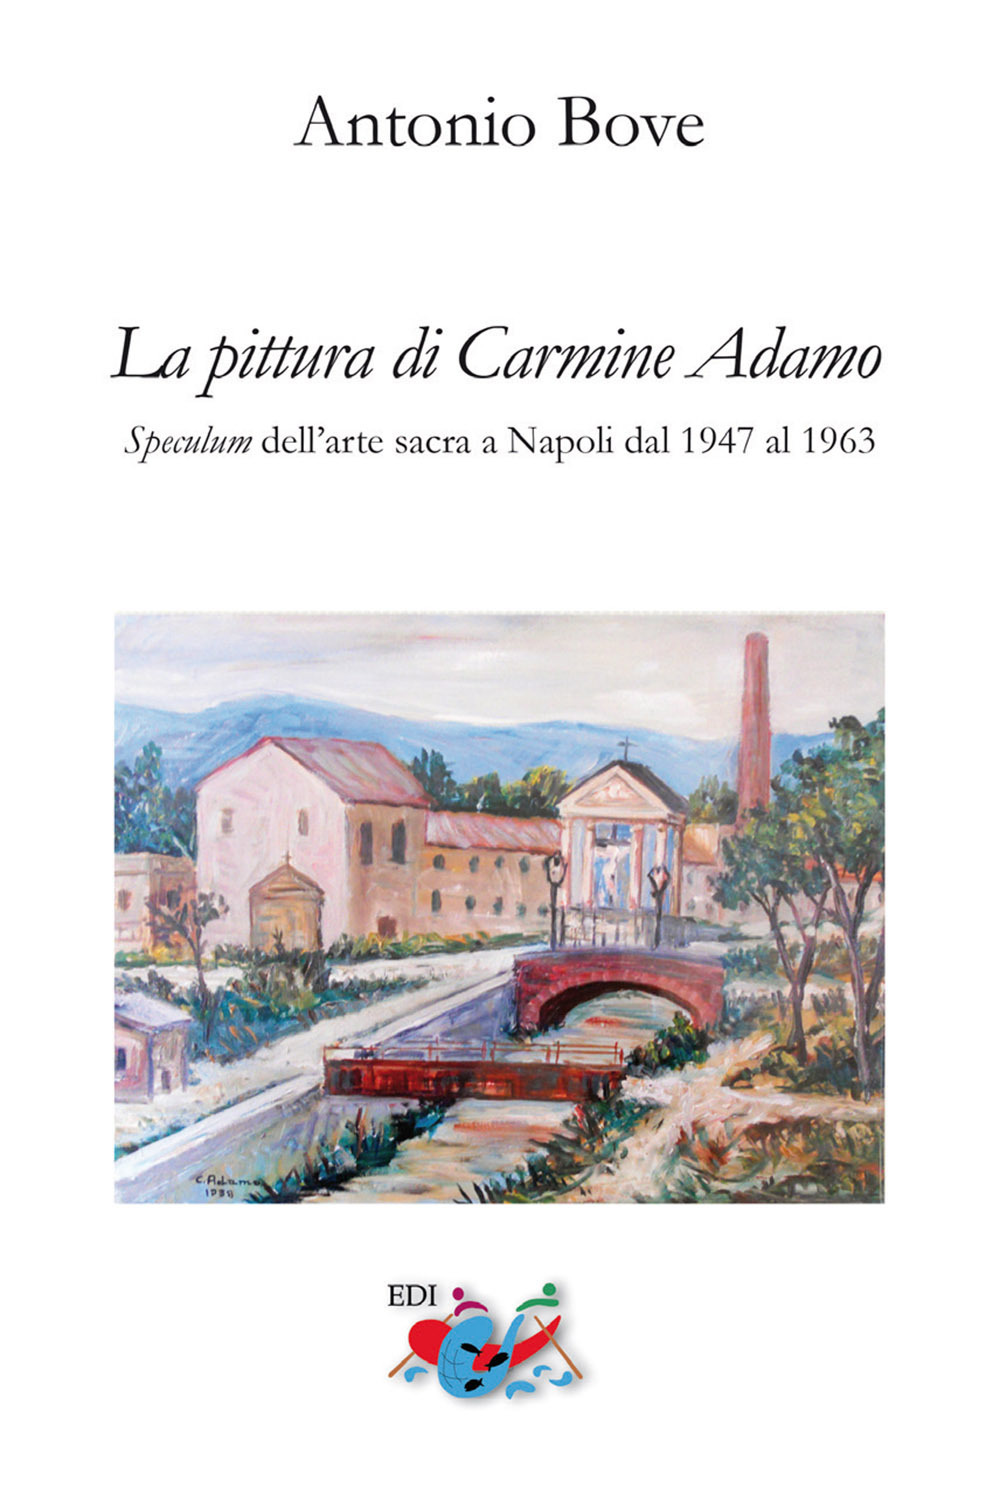 La pittura di Carmine Adamo. Speculum dell'arte sacra a Napoli dal 1947 al 1963